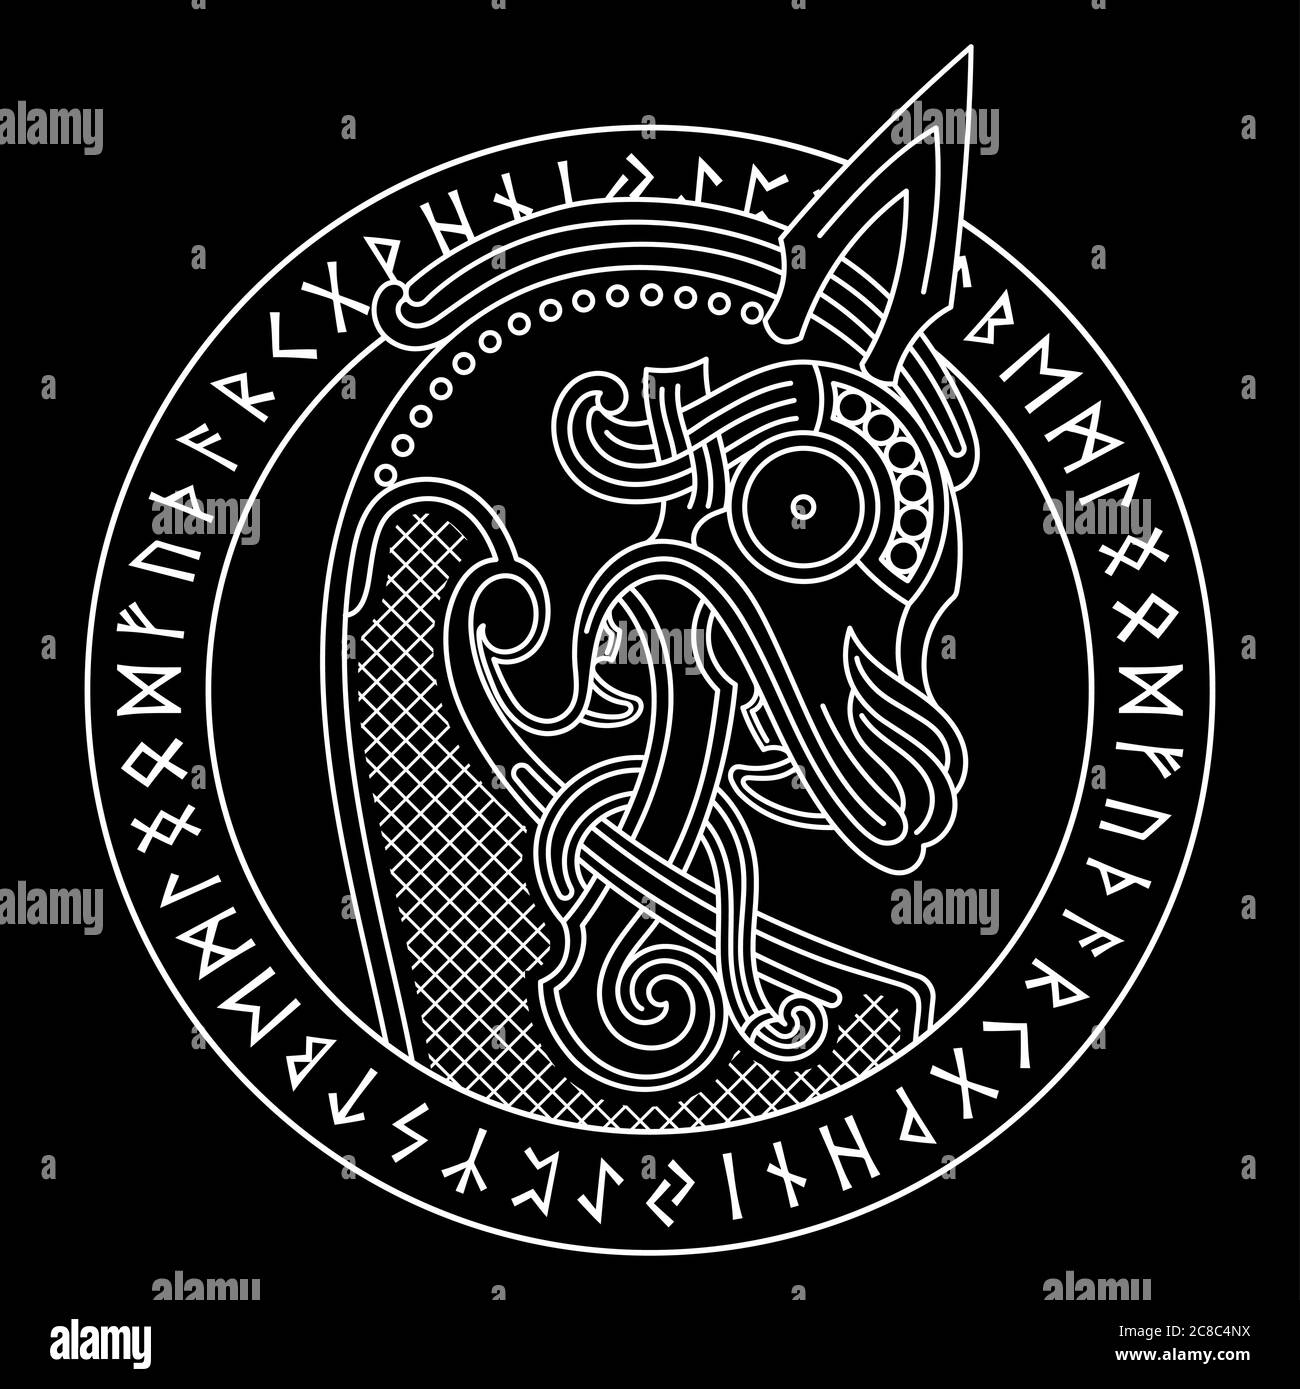 Design scandinavo. La figura nasale della nave vichinga Drakkar sotto forma di dragone e cerchio runico Illustrazione Vettoriale